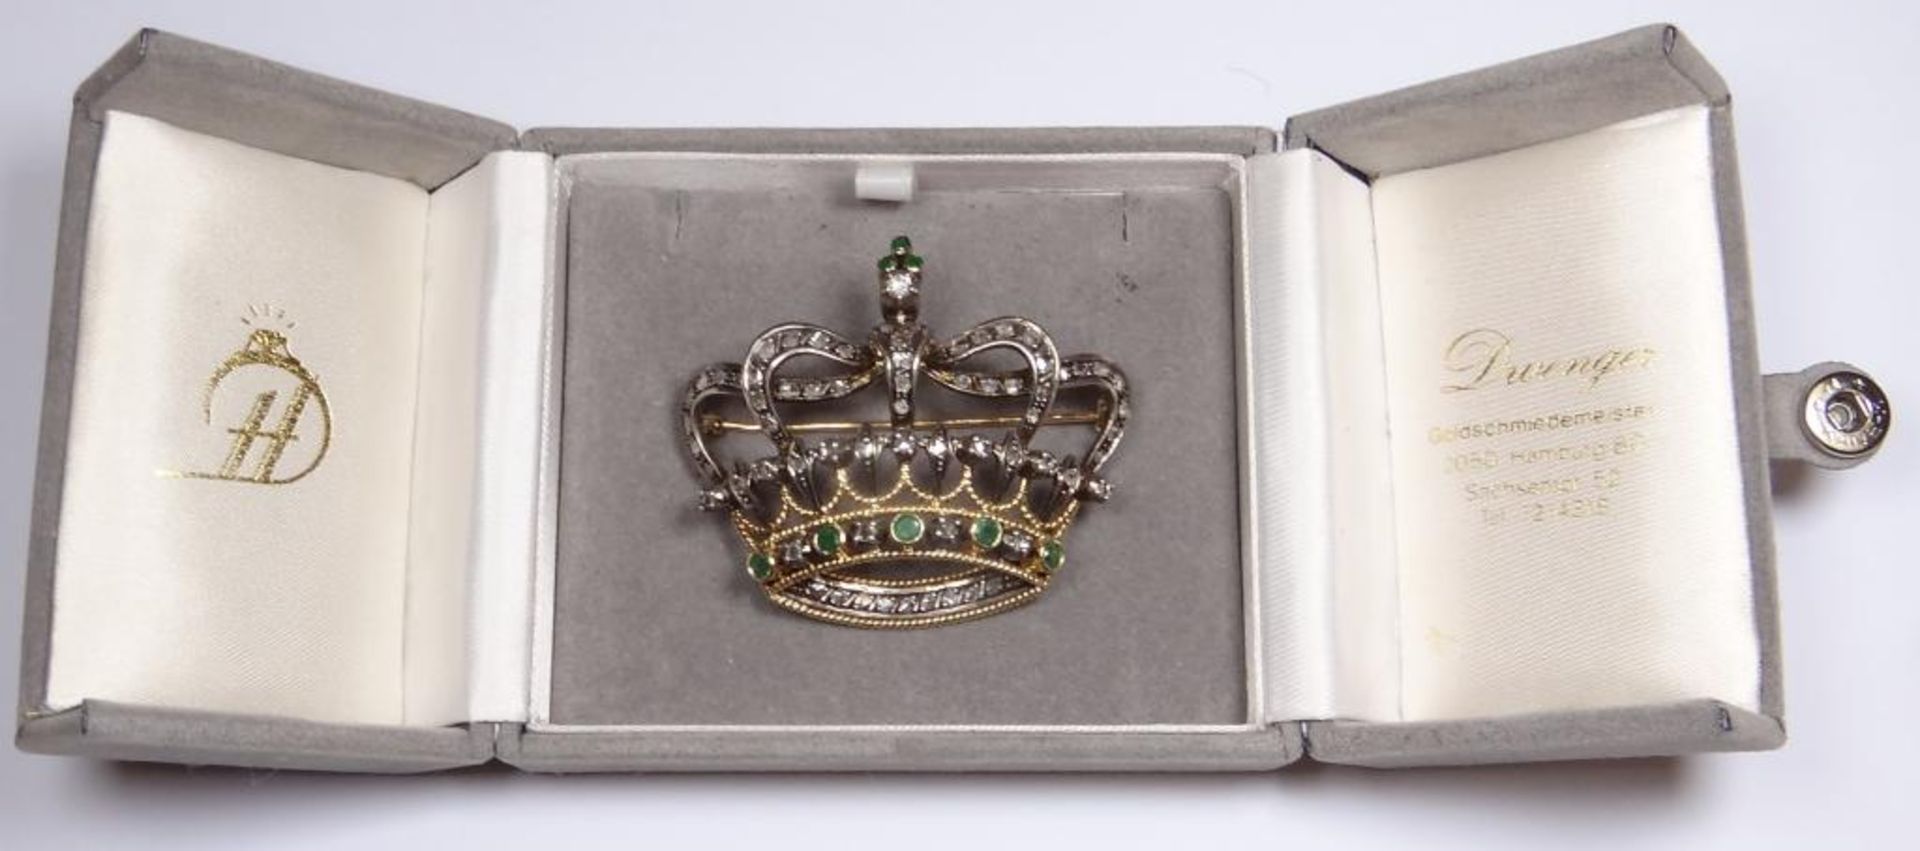 Schöne Diamant Brosche in Form einer durchbrochen Krone,Bicolor,Gold 750/000 auf Nadel 18K sowie 2